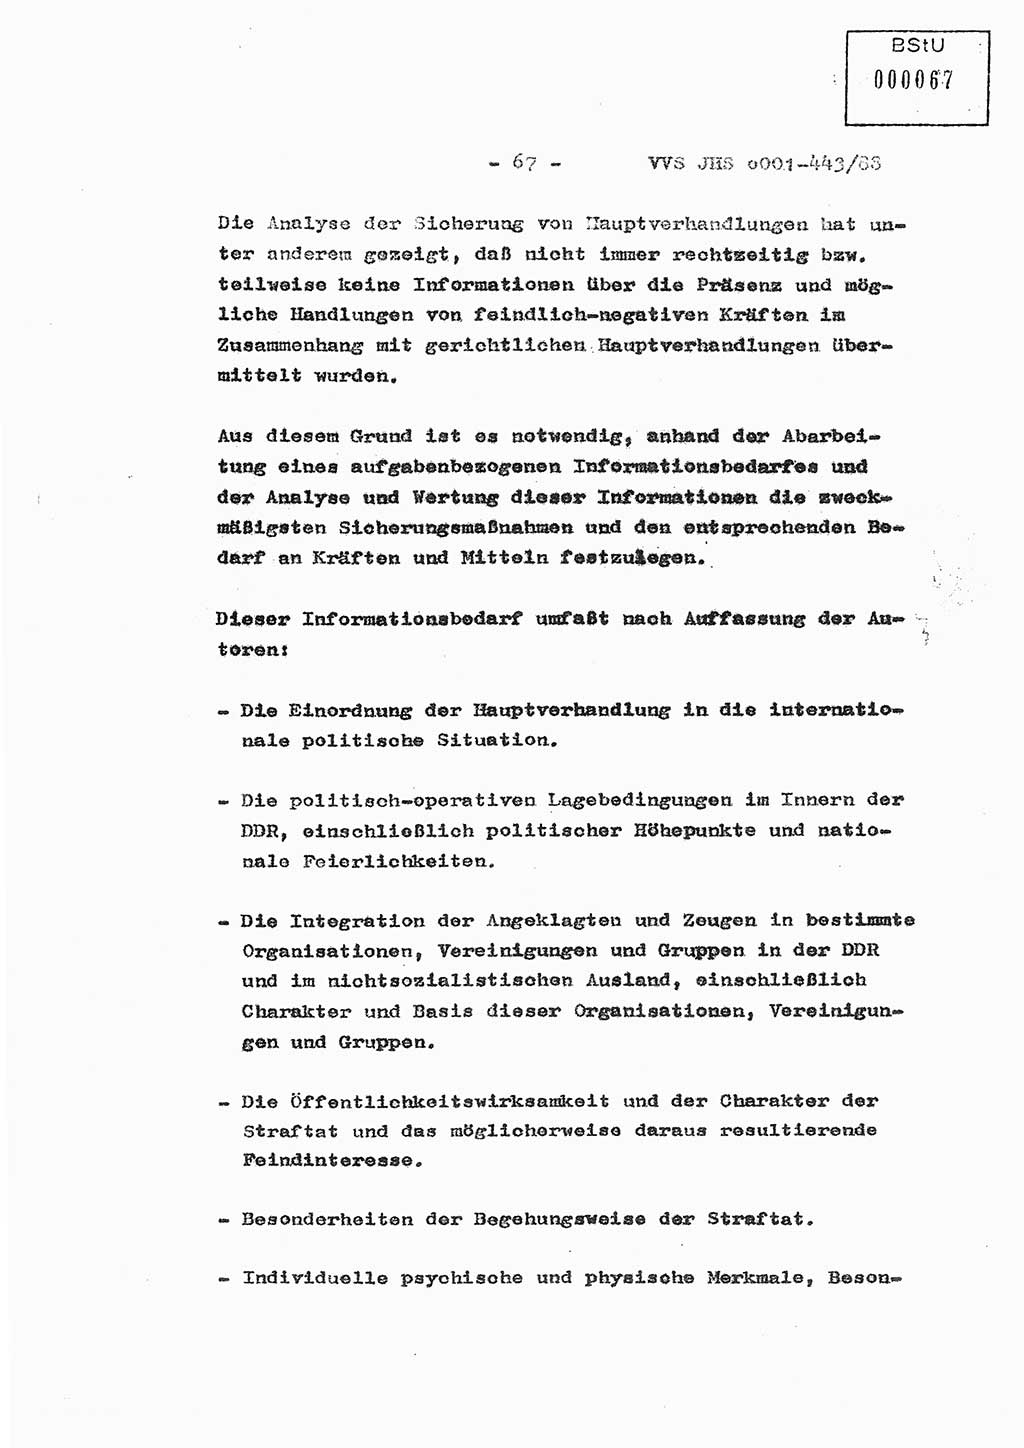 Diplomarbeit Hauptmann Michael Rast (Abt. ⅩⅣ), Major Bernd Rahaus (Abt. ⅩⅣ), Ministerium für Staatssicherheit (MfS) [Deutsche Demokratische Republik (DDR)], Juristische Hochschule (JHS), Vertrauliche Verschlußsache (VVS) o001-443/88, Potsdam 1988, Seite 67 (Dipl.-Arb. MfS DDR JHS VVS o001-443/88 1988, S. 67)